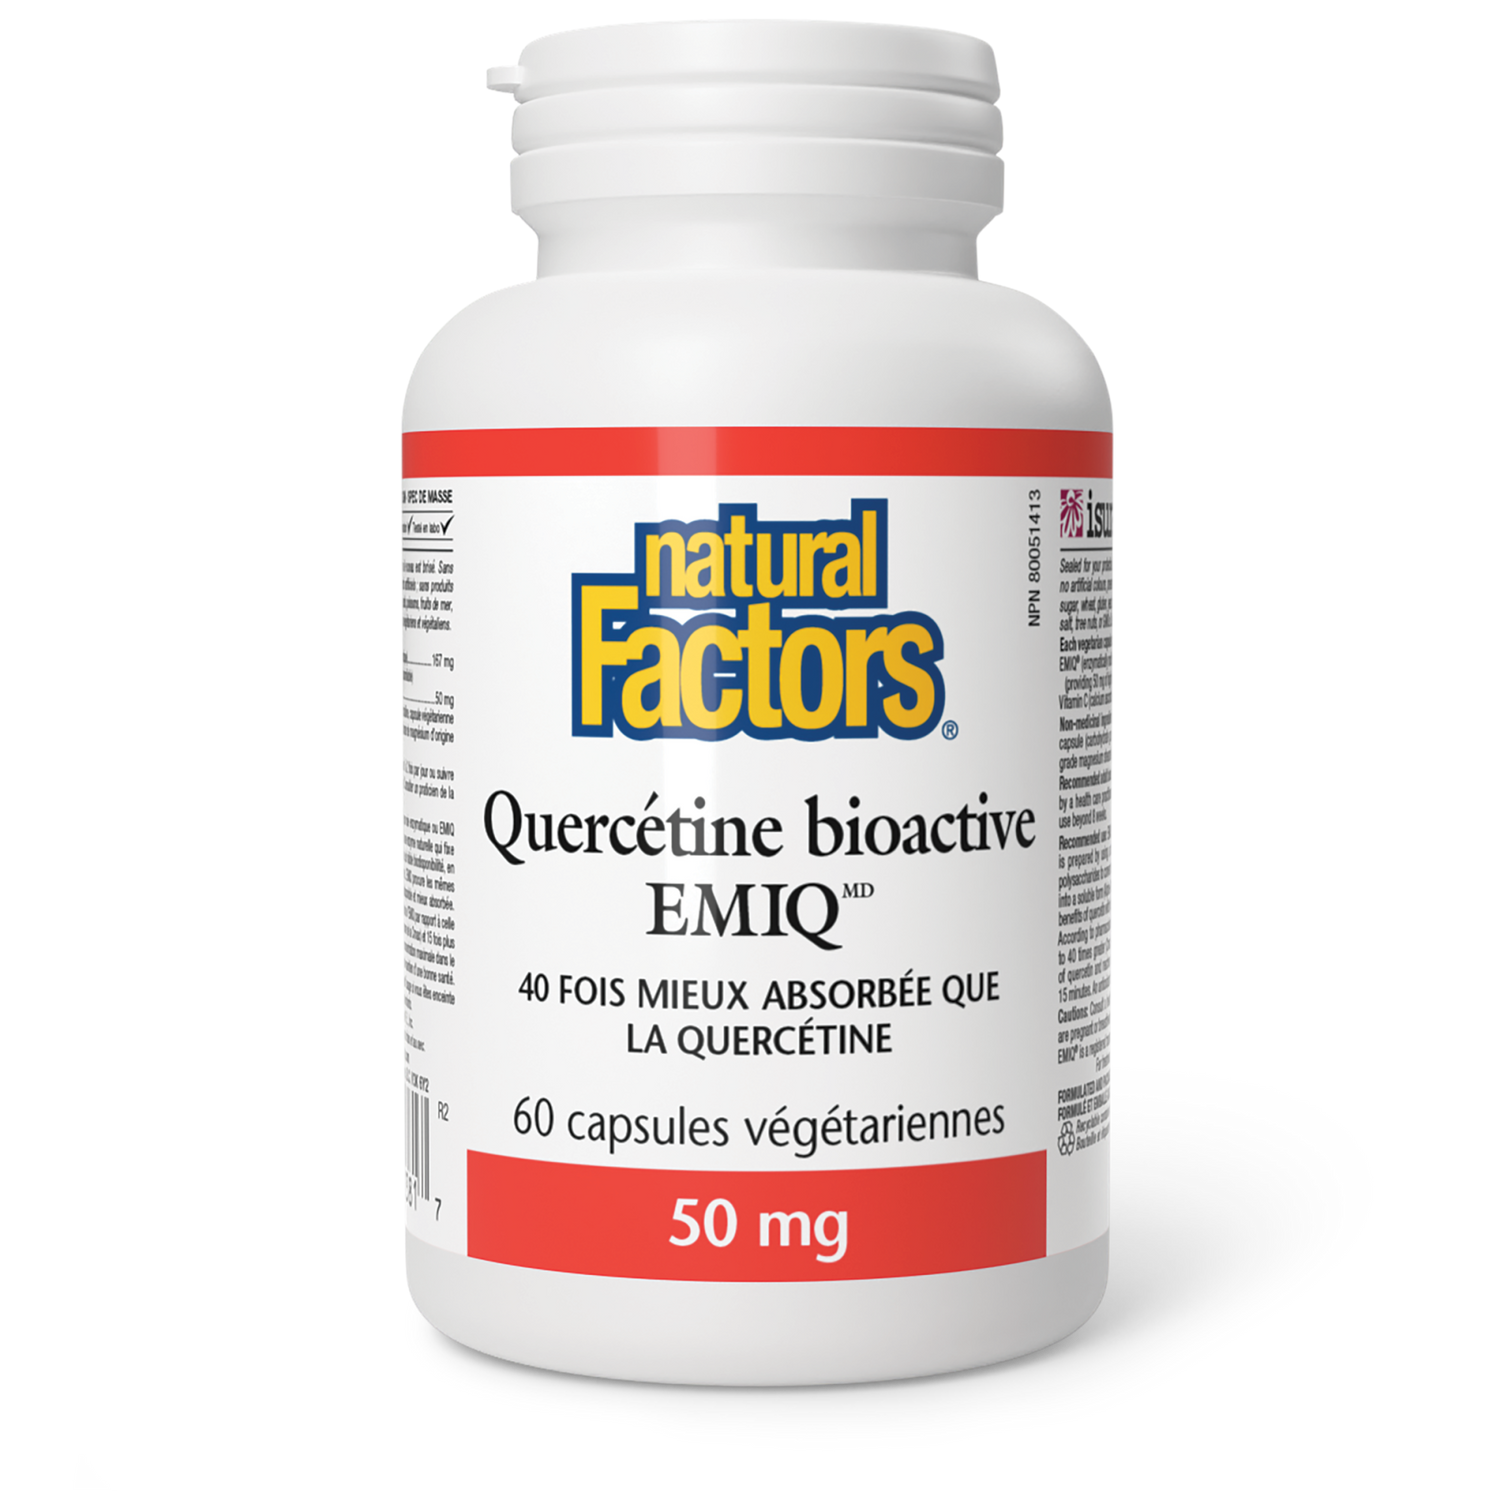 Quercétine bioactive EMIQ 50 mg, Natural Factors|v|image|1381